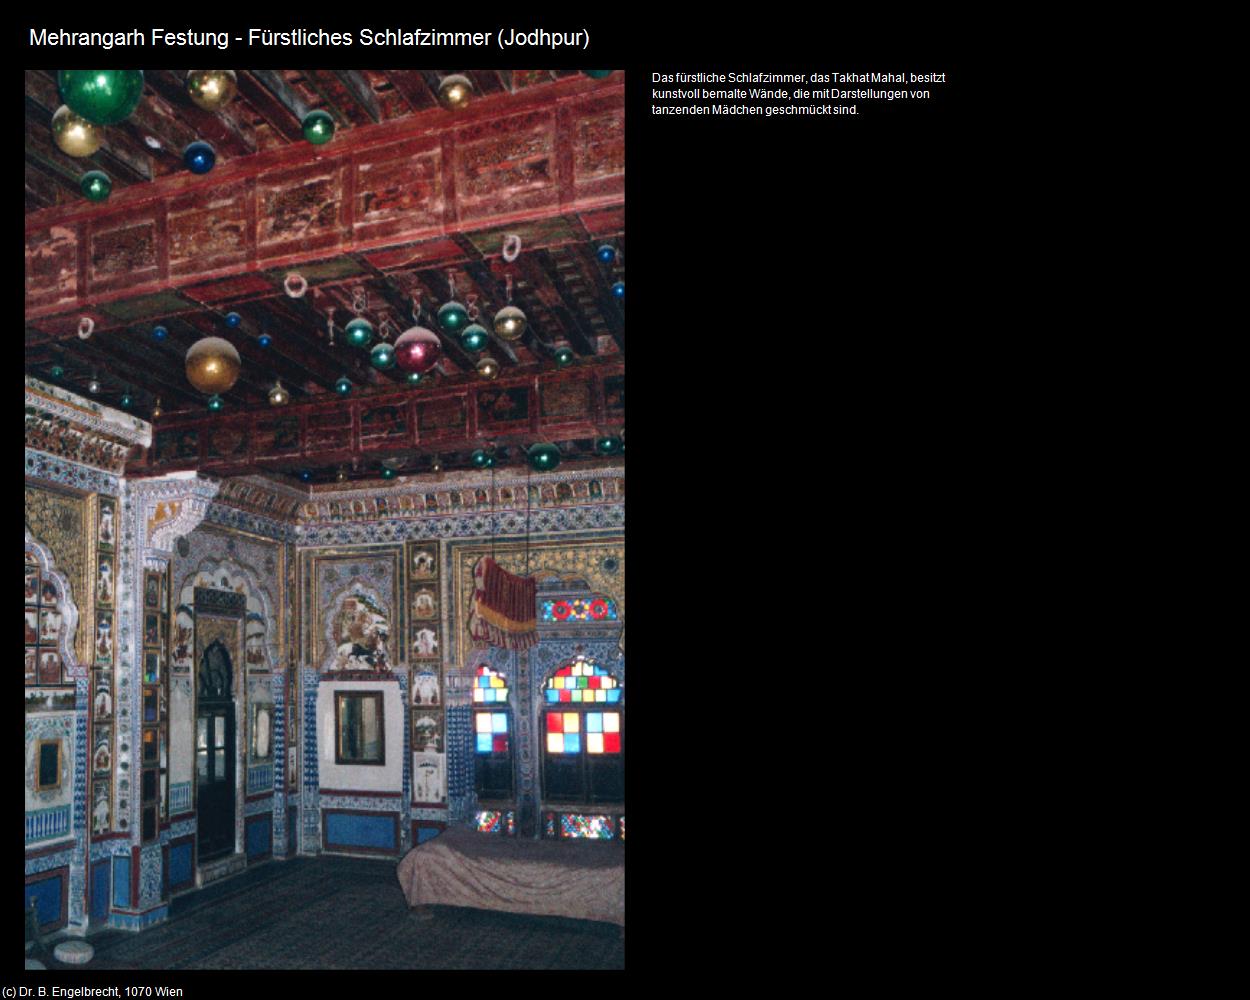 Mehrangarh Festung-Fürstliches Schlafzimmer (Jodhpur) in Rajasthan - das Land der Könige